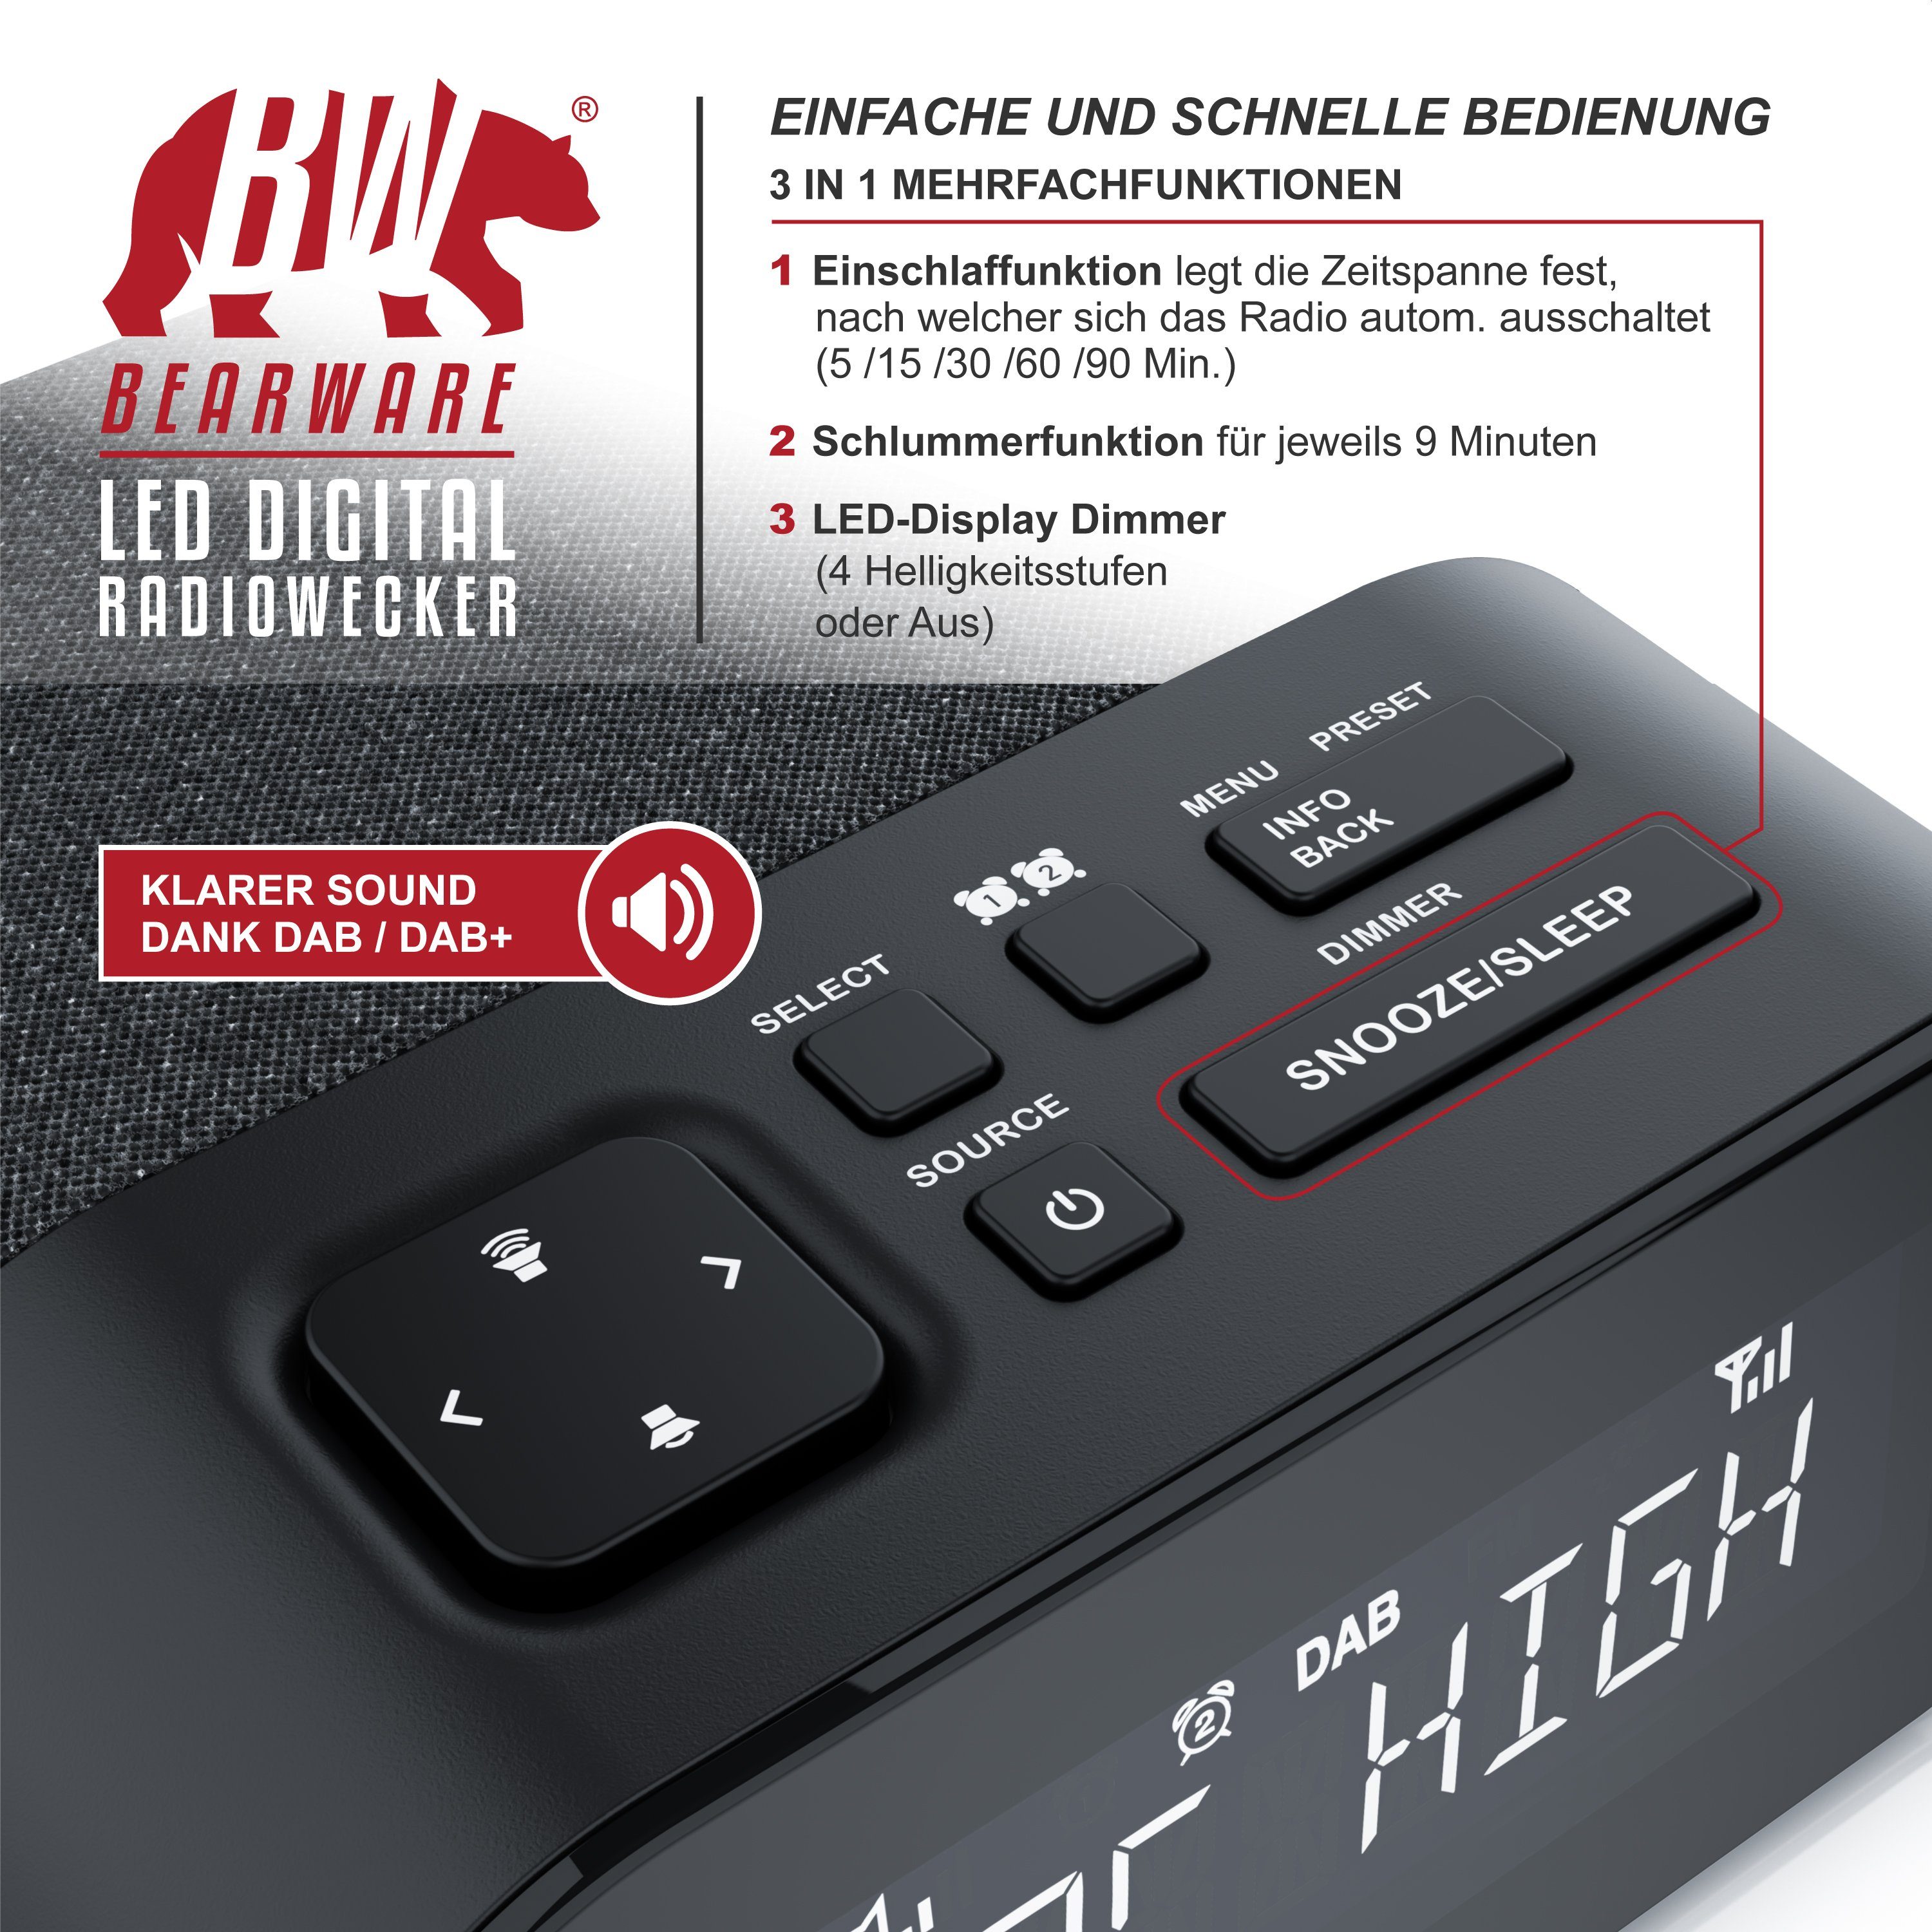 BEARWARE Radiowecker Küchenradio digital, FM 4 Radio, Wecker, & + DAB Helligkeitsstufen